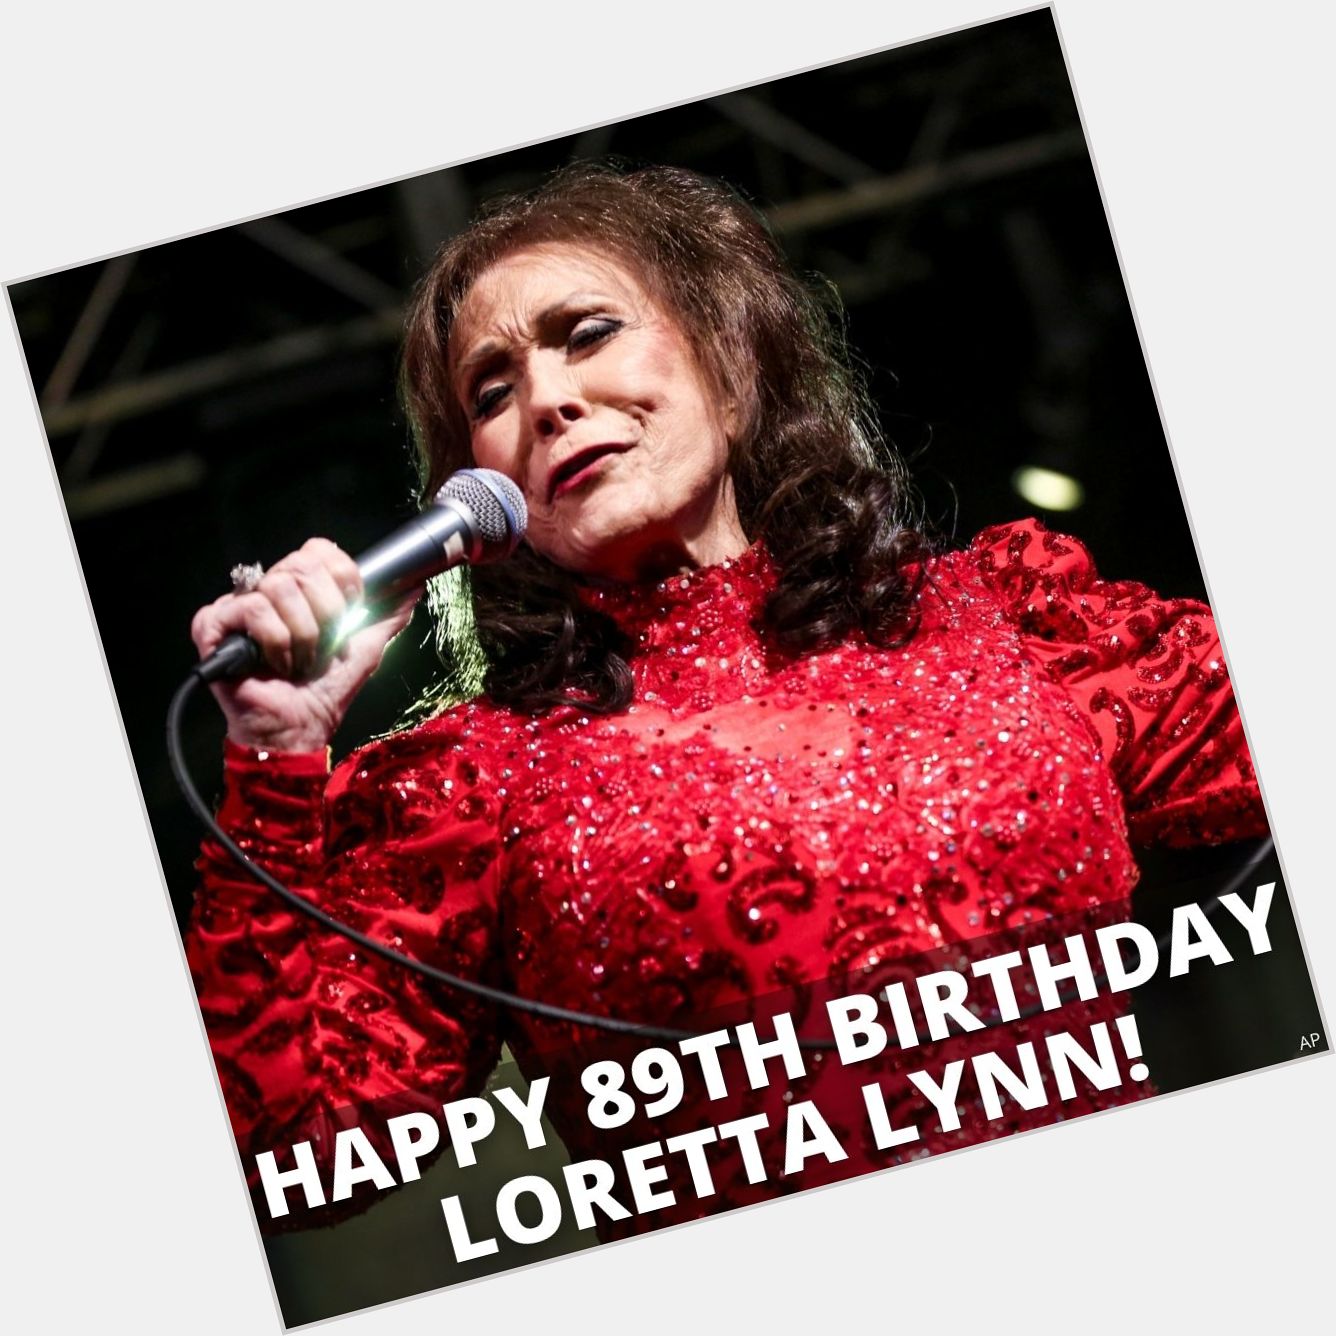 Happy 89th Birthday to Loretta Lynn! 